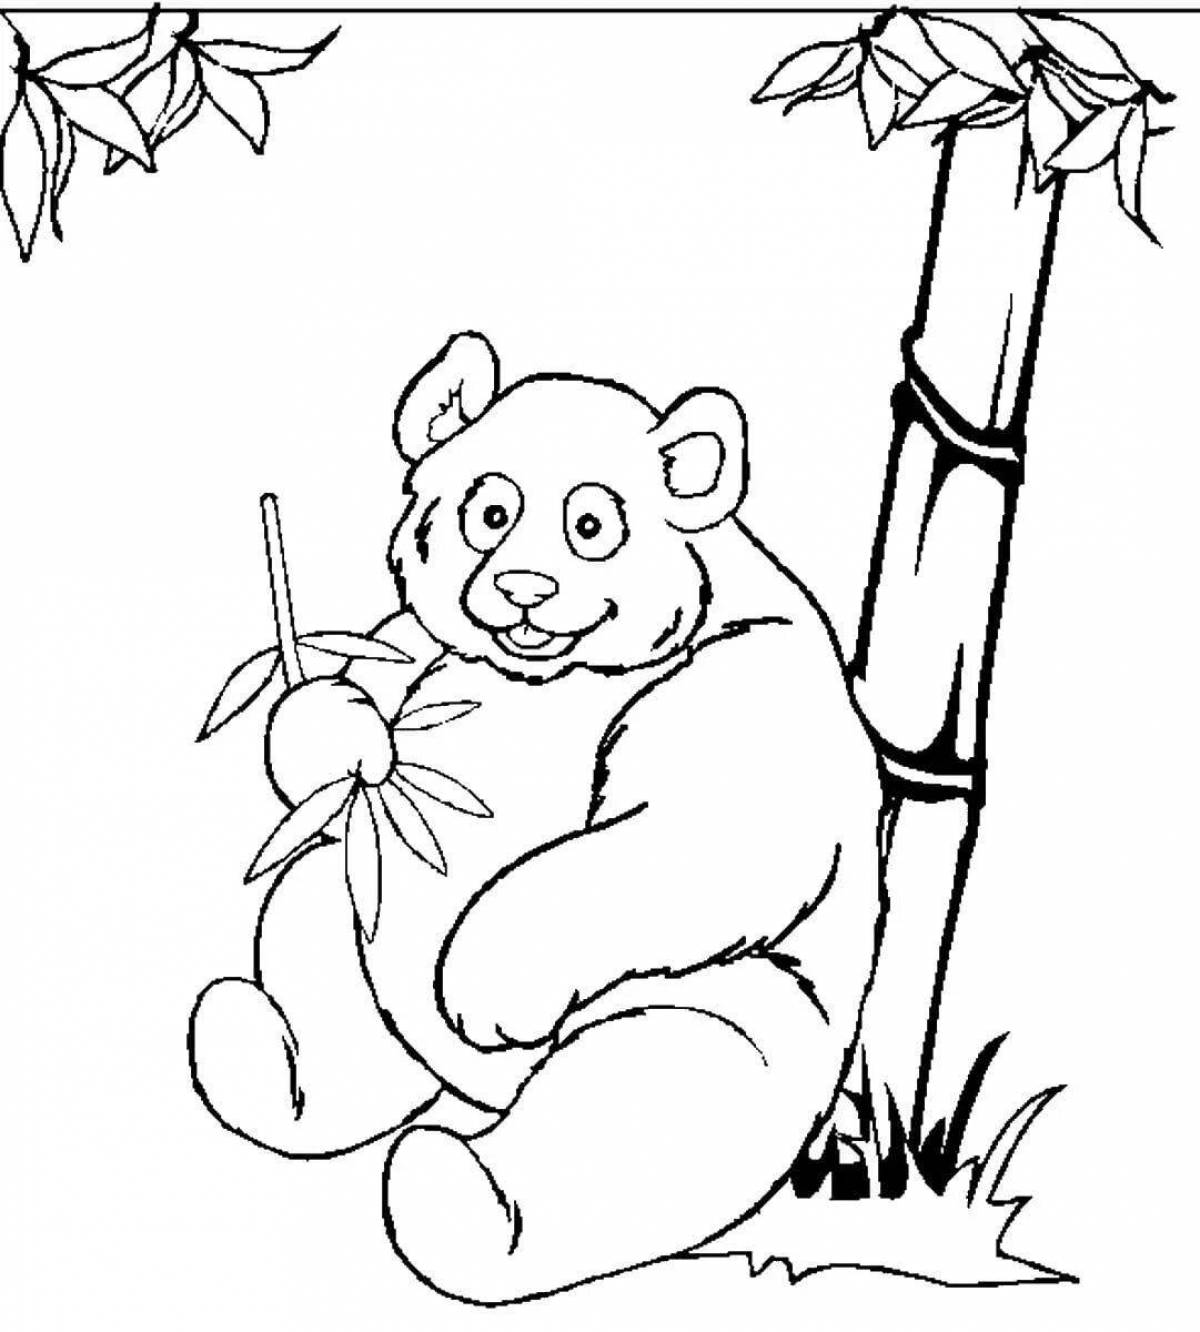 Joyful panda coloring book with bamboo